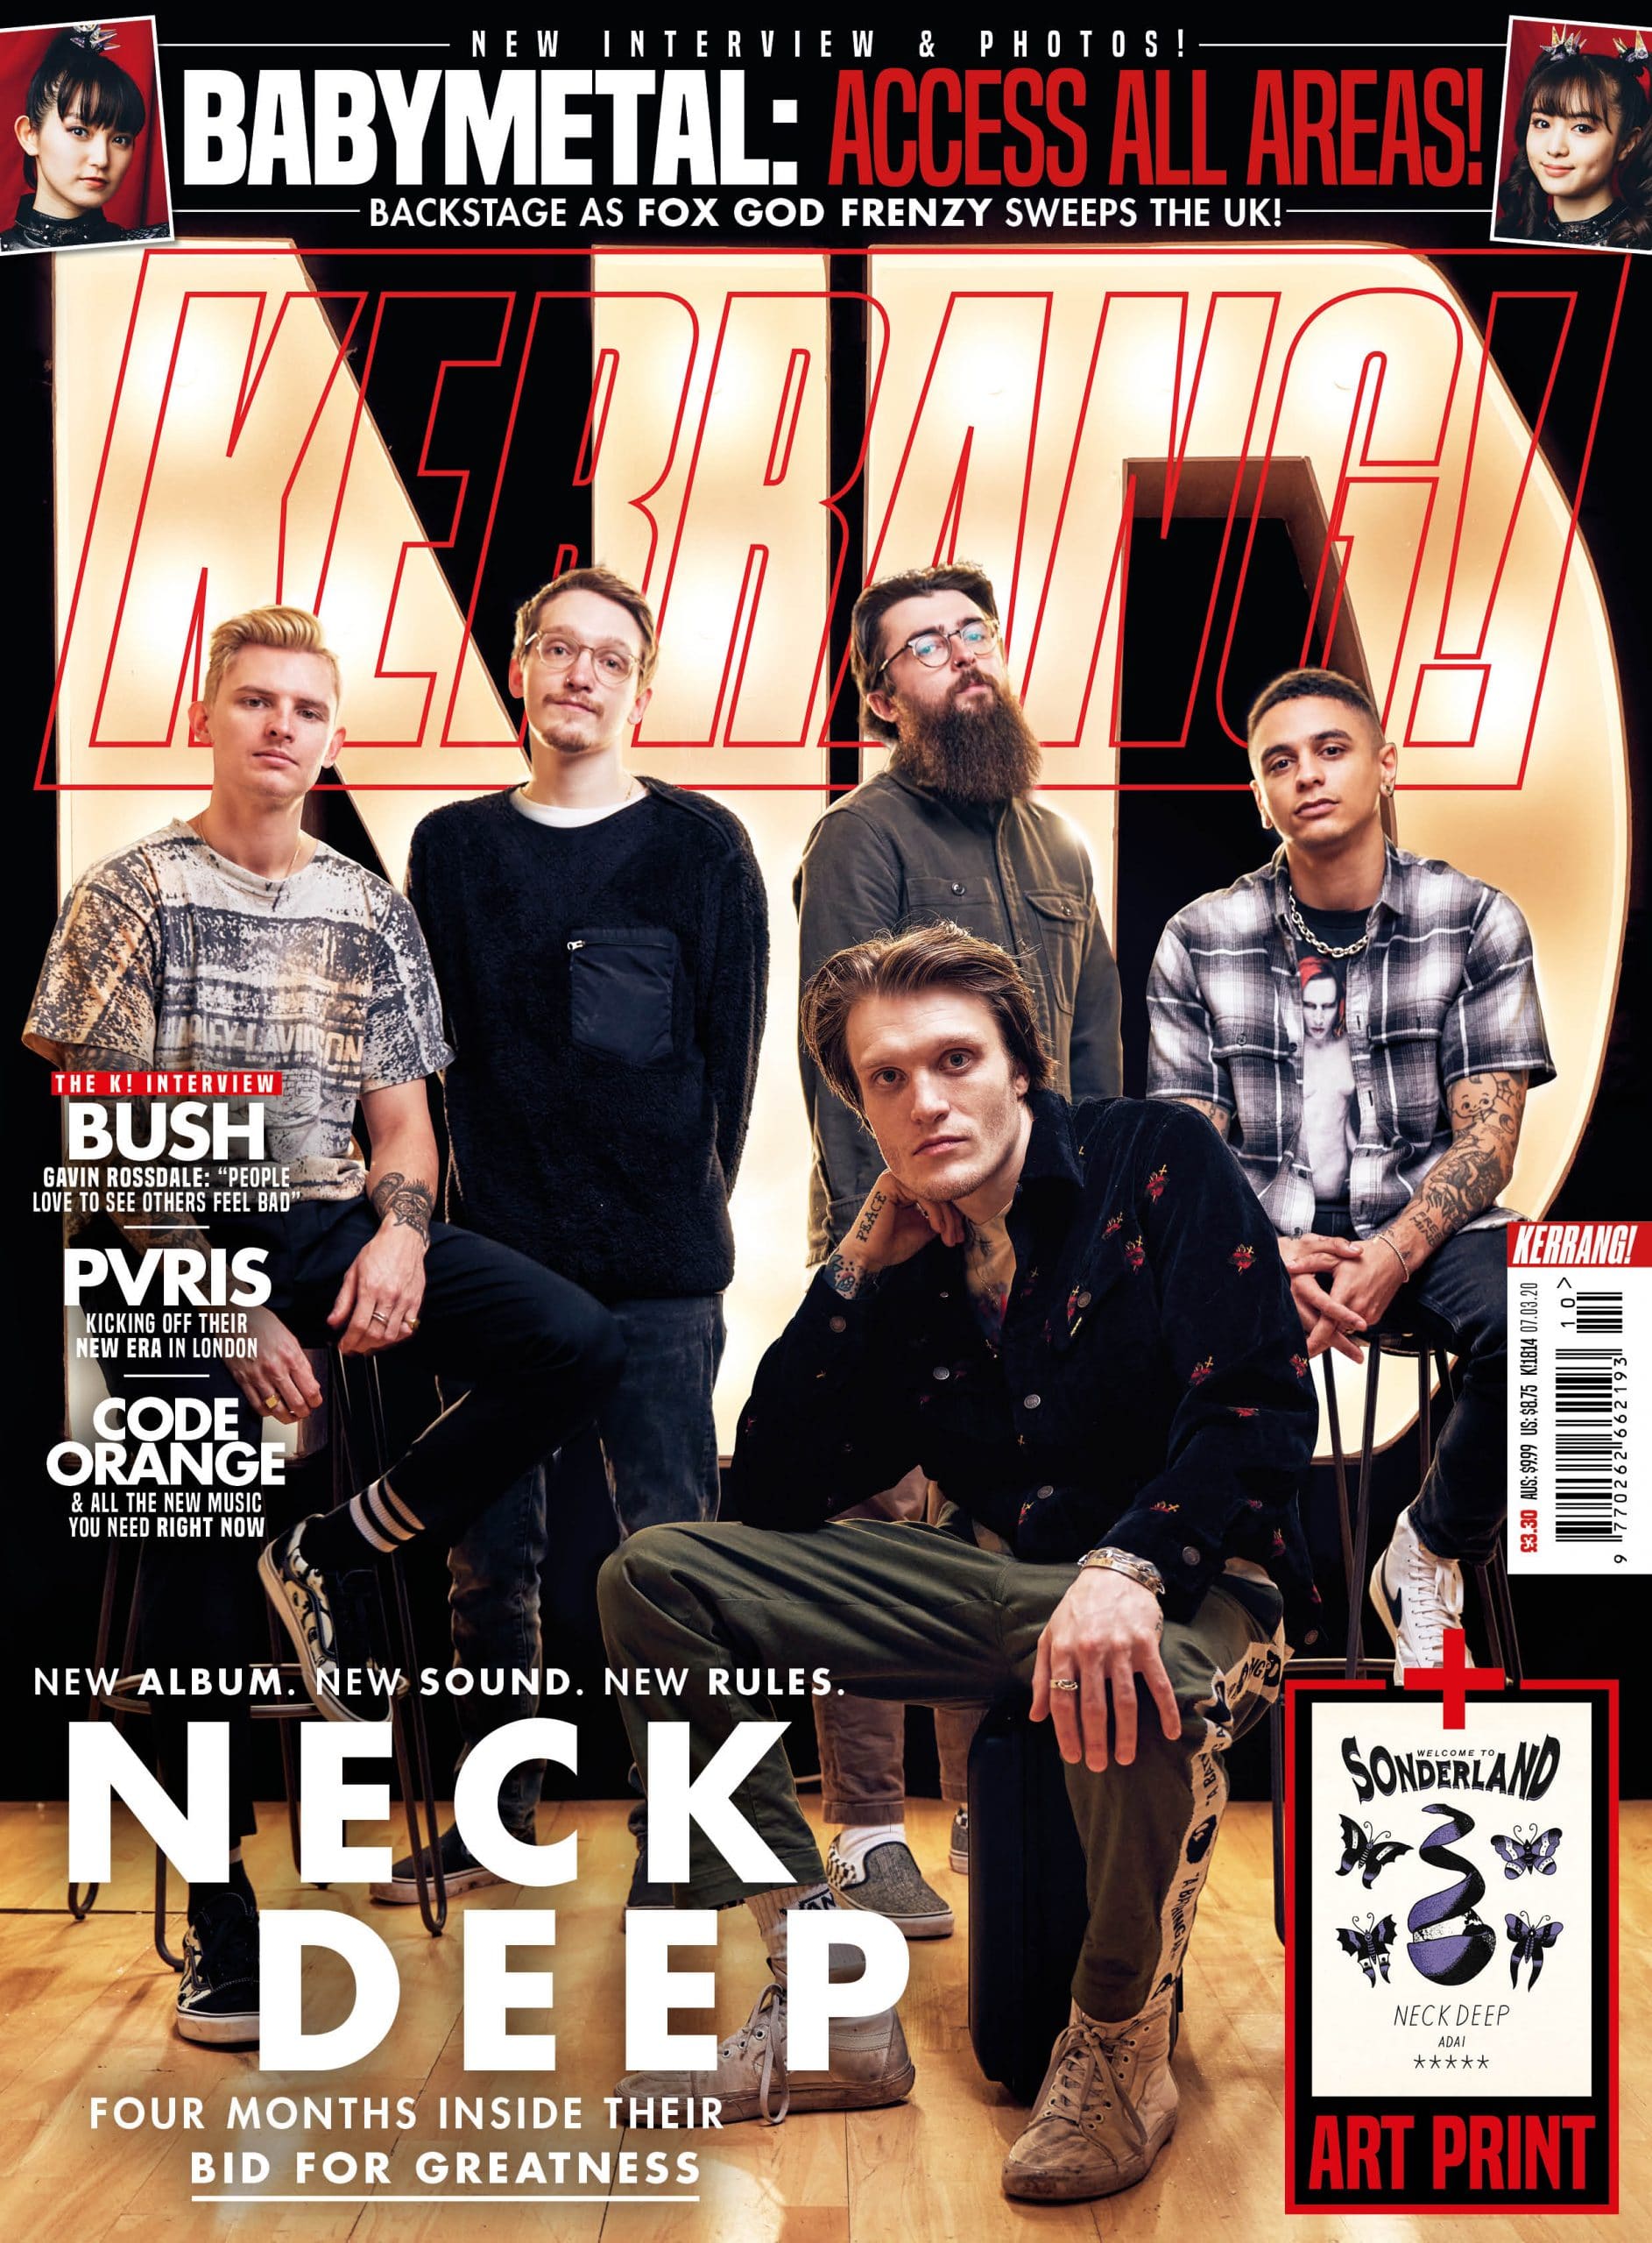 Kerrang Magazine - Neck Deep